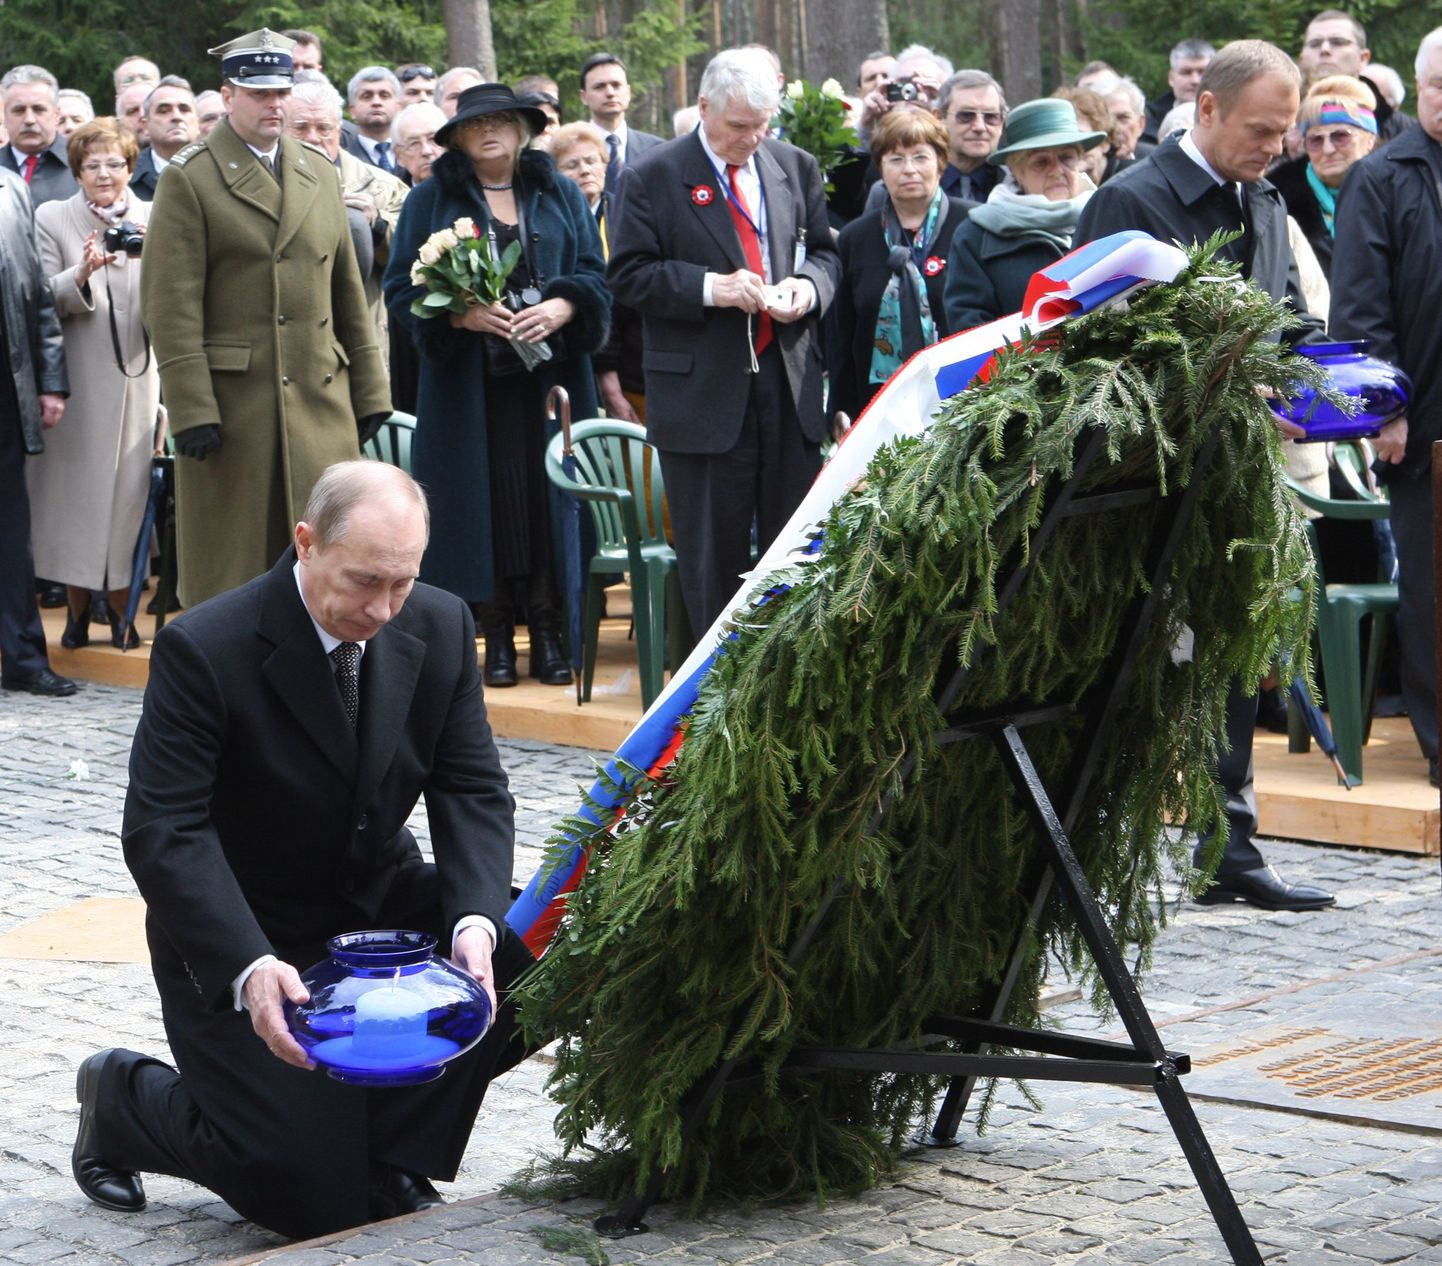 Venemaa Föderatsiooni peaminister Vladimir Putin asetamas küünalt 1940. aastal tapetud Poola ohvitseride mälestuseks.